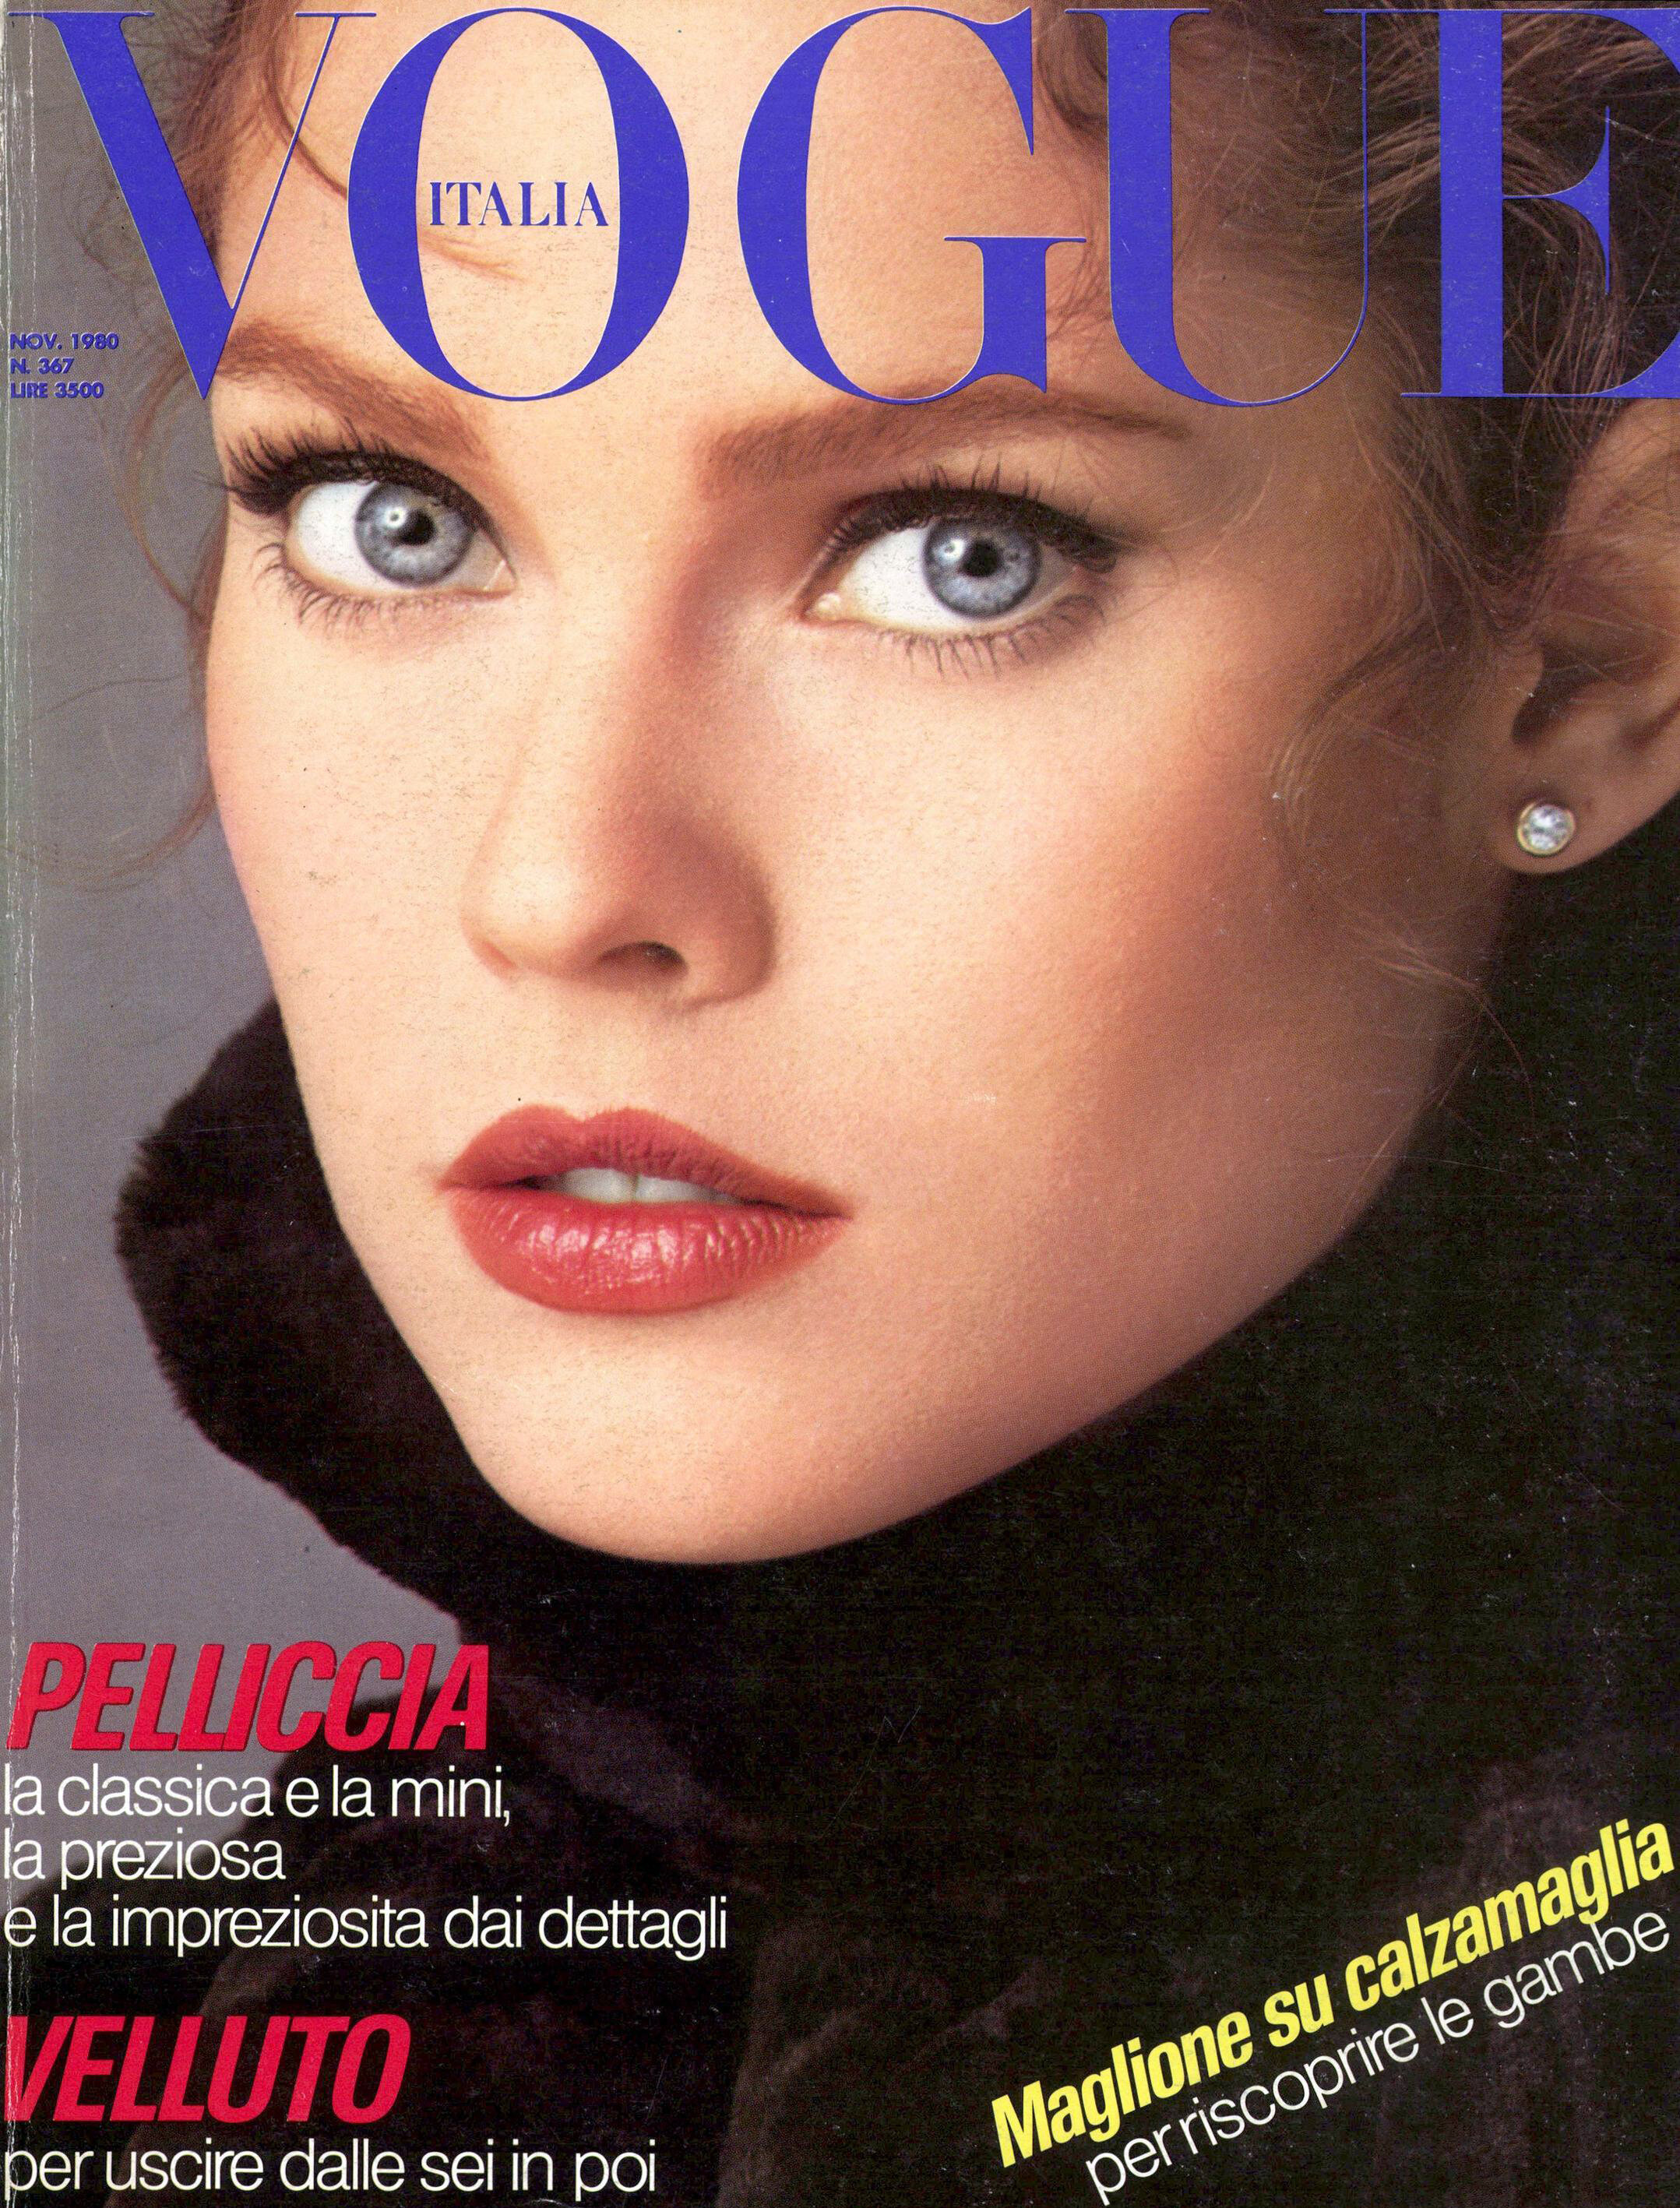 Vogue Italia (Nov 1980)_cover_1.jpg